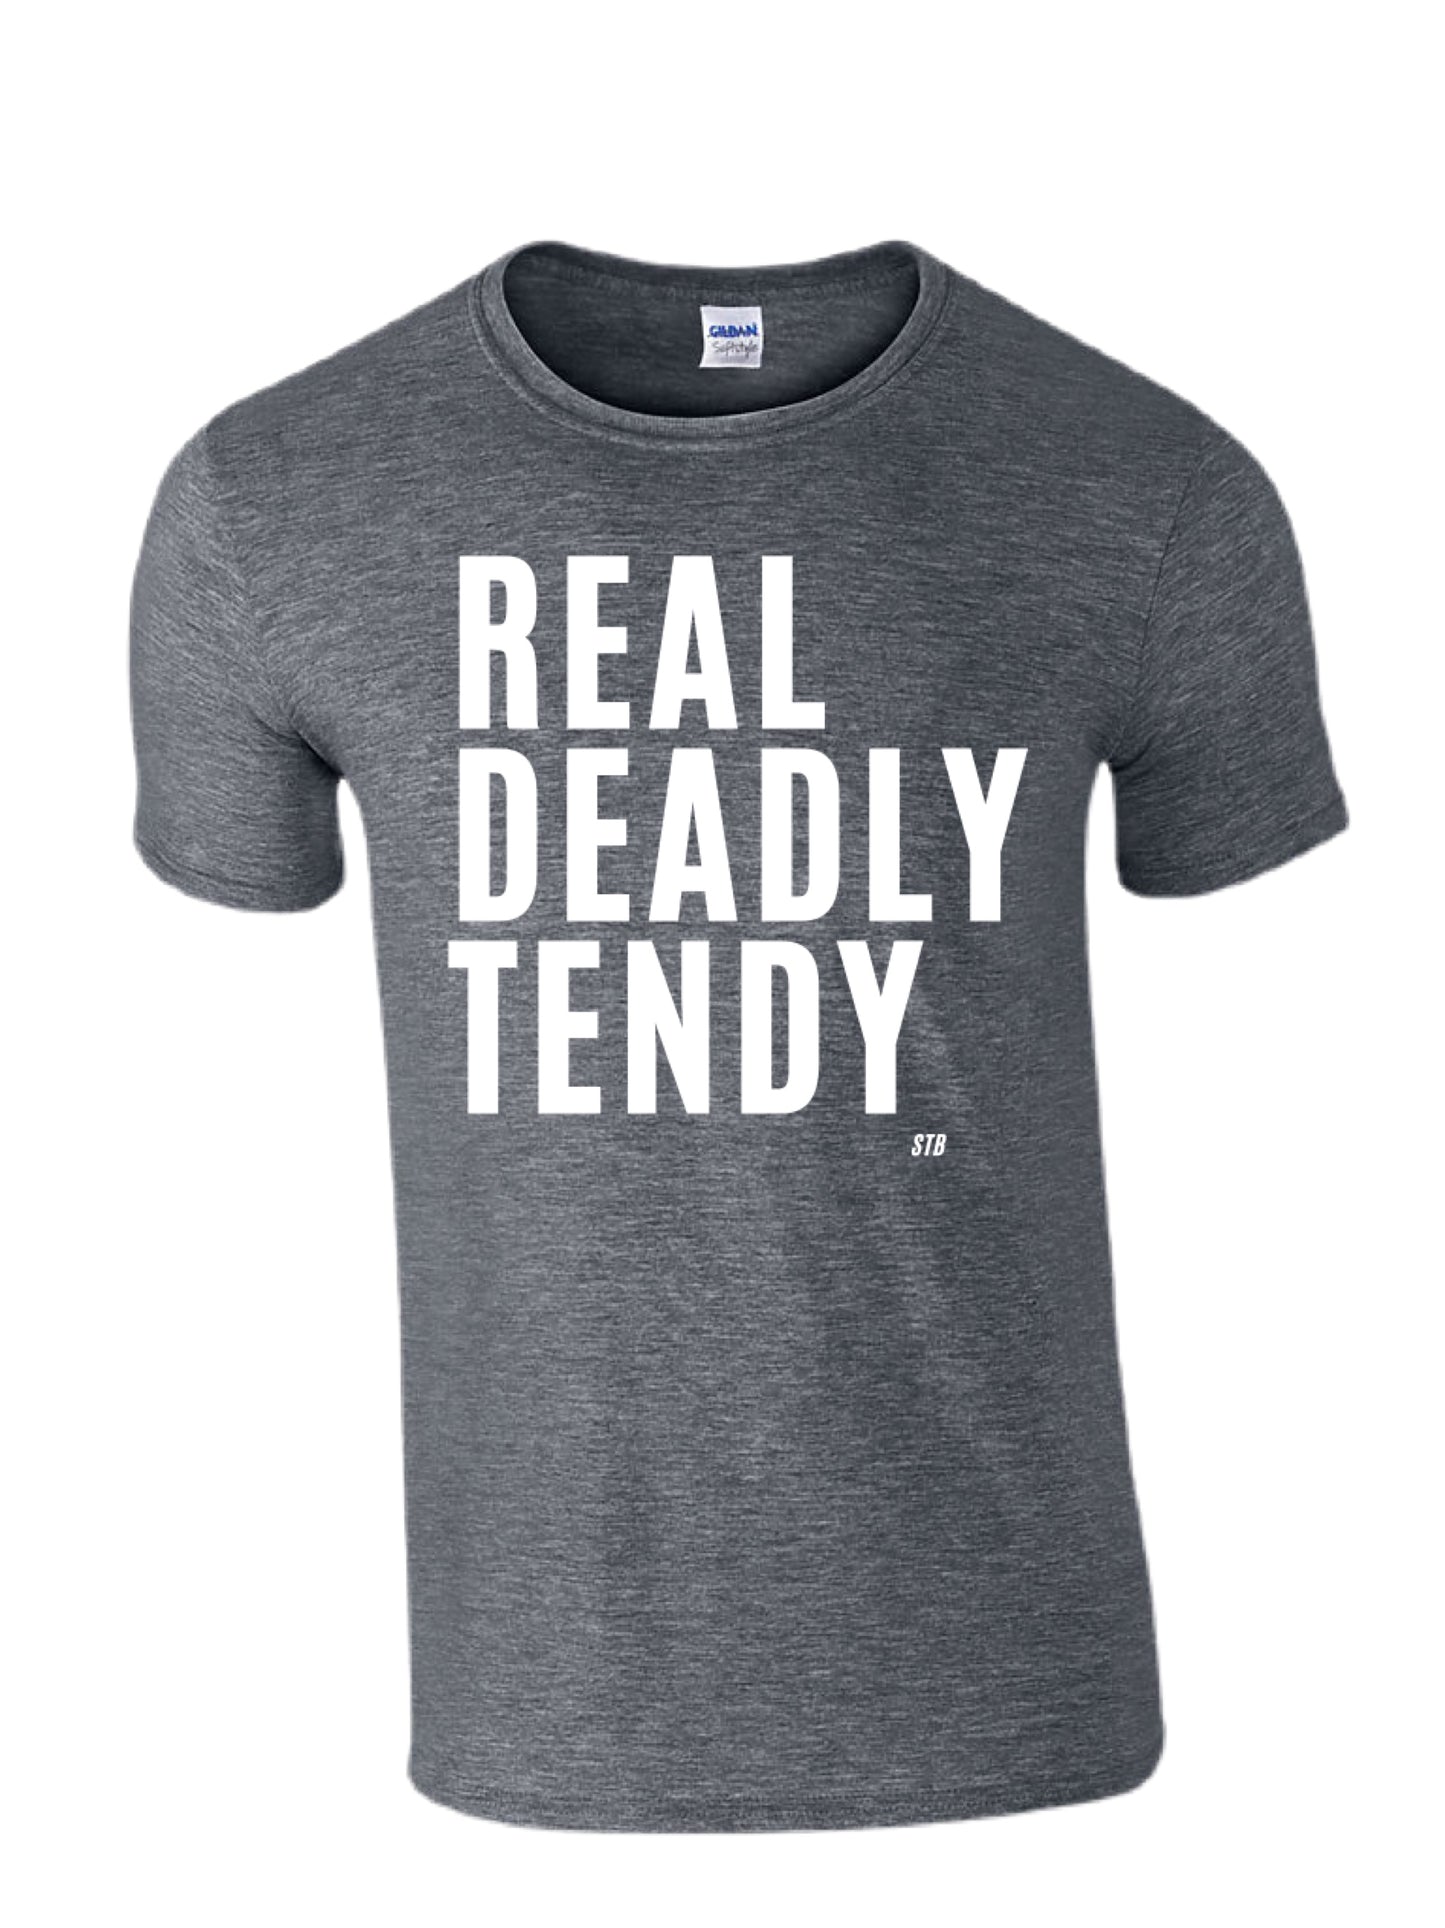 Real Deadly Tendy Tshirt- Dark Grey